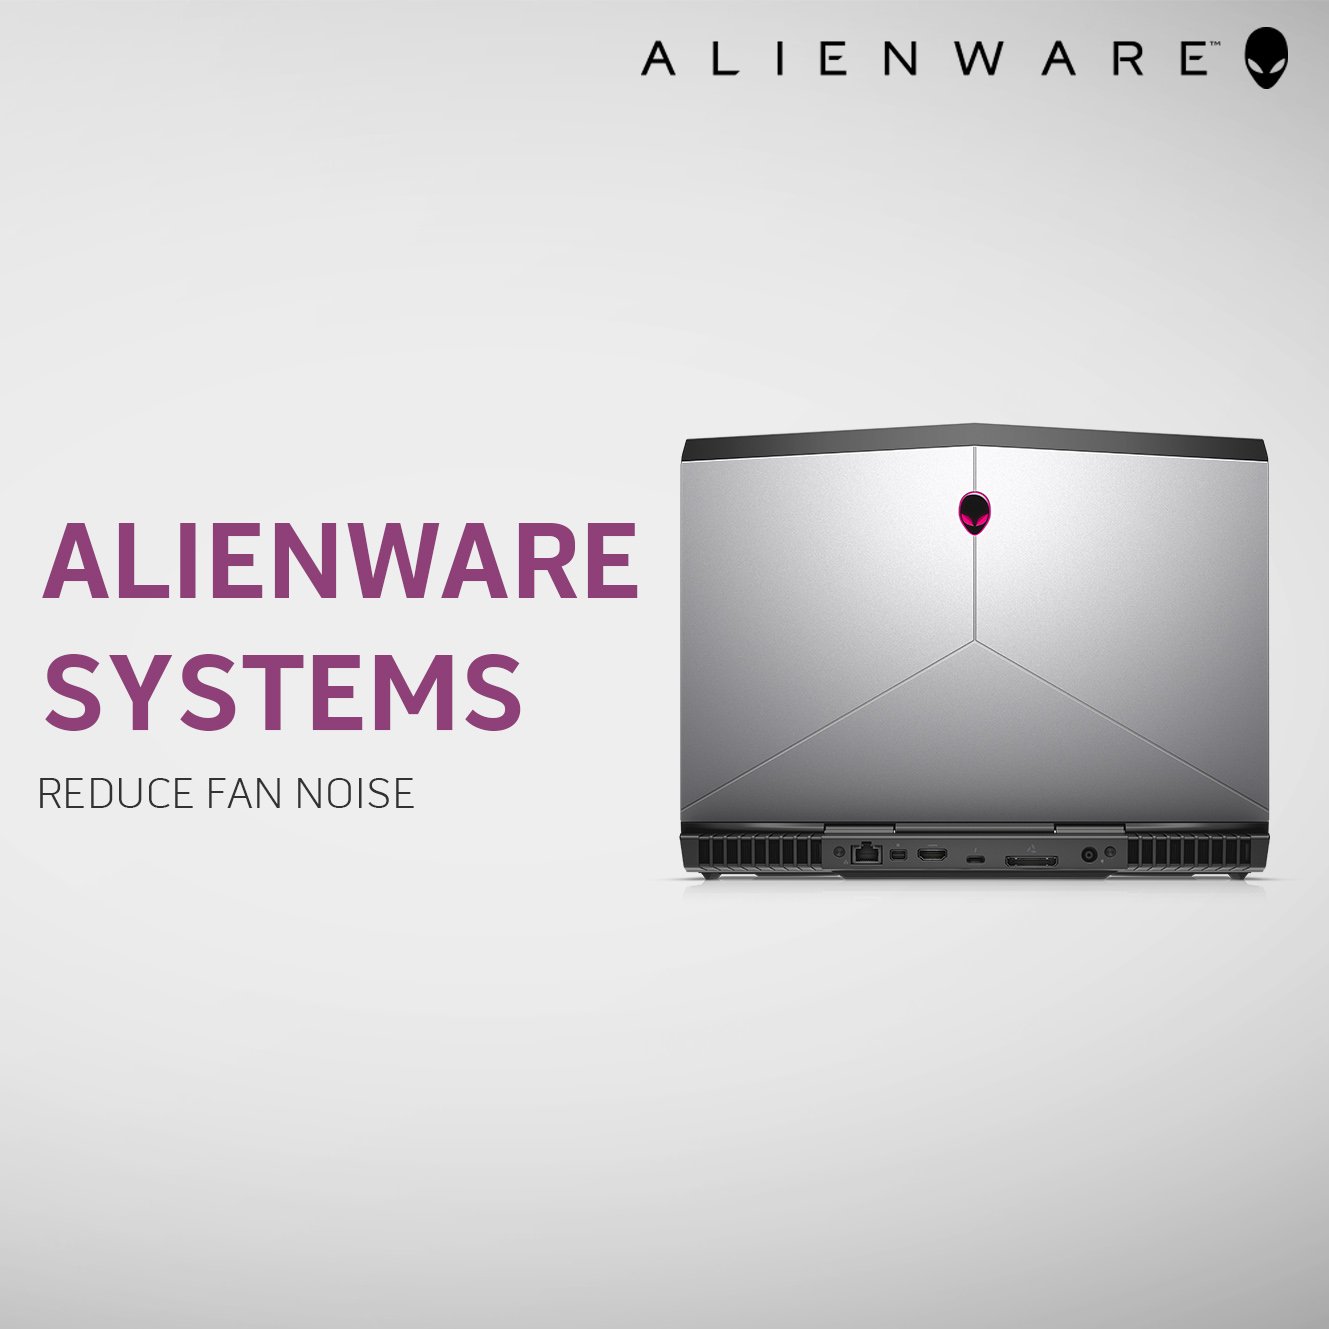 Alienware Support on Twitter: "Reduce fan 3 simple https://t.co/KhpBcLhtmU" / Twitter